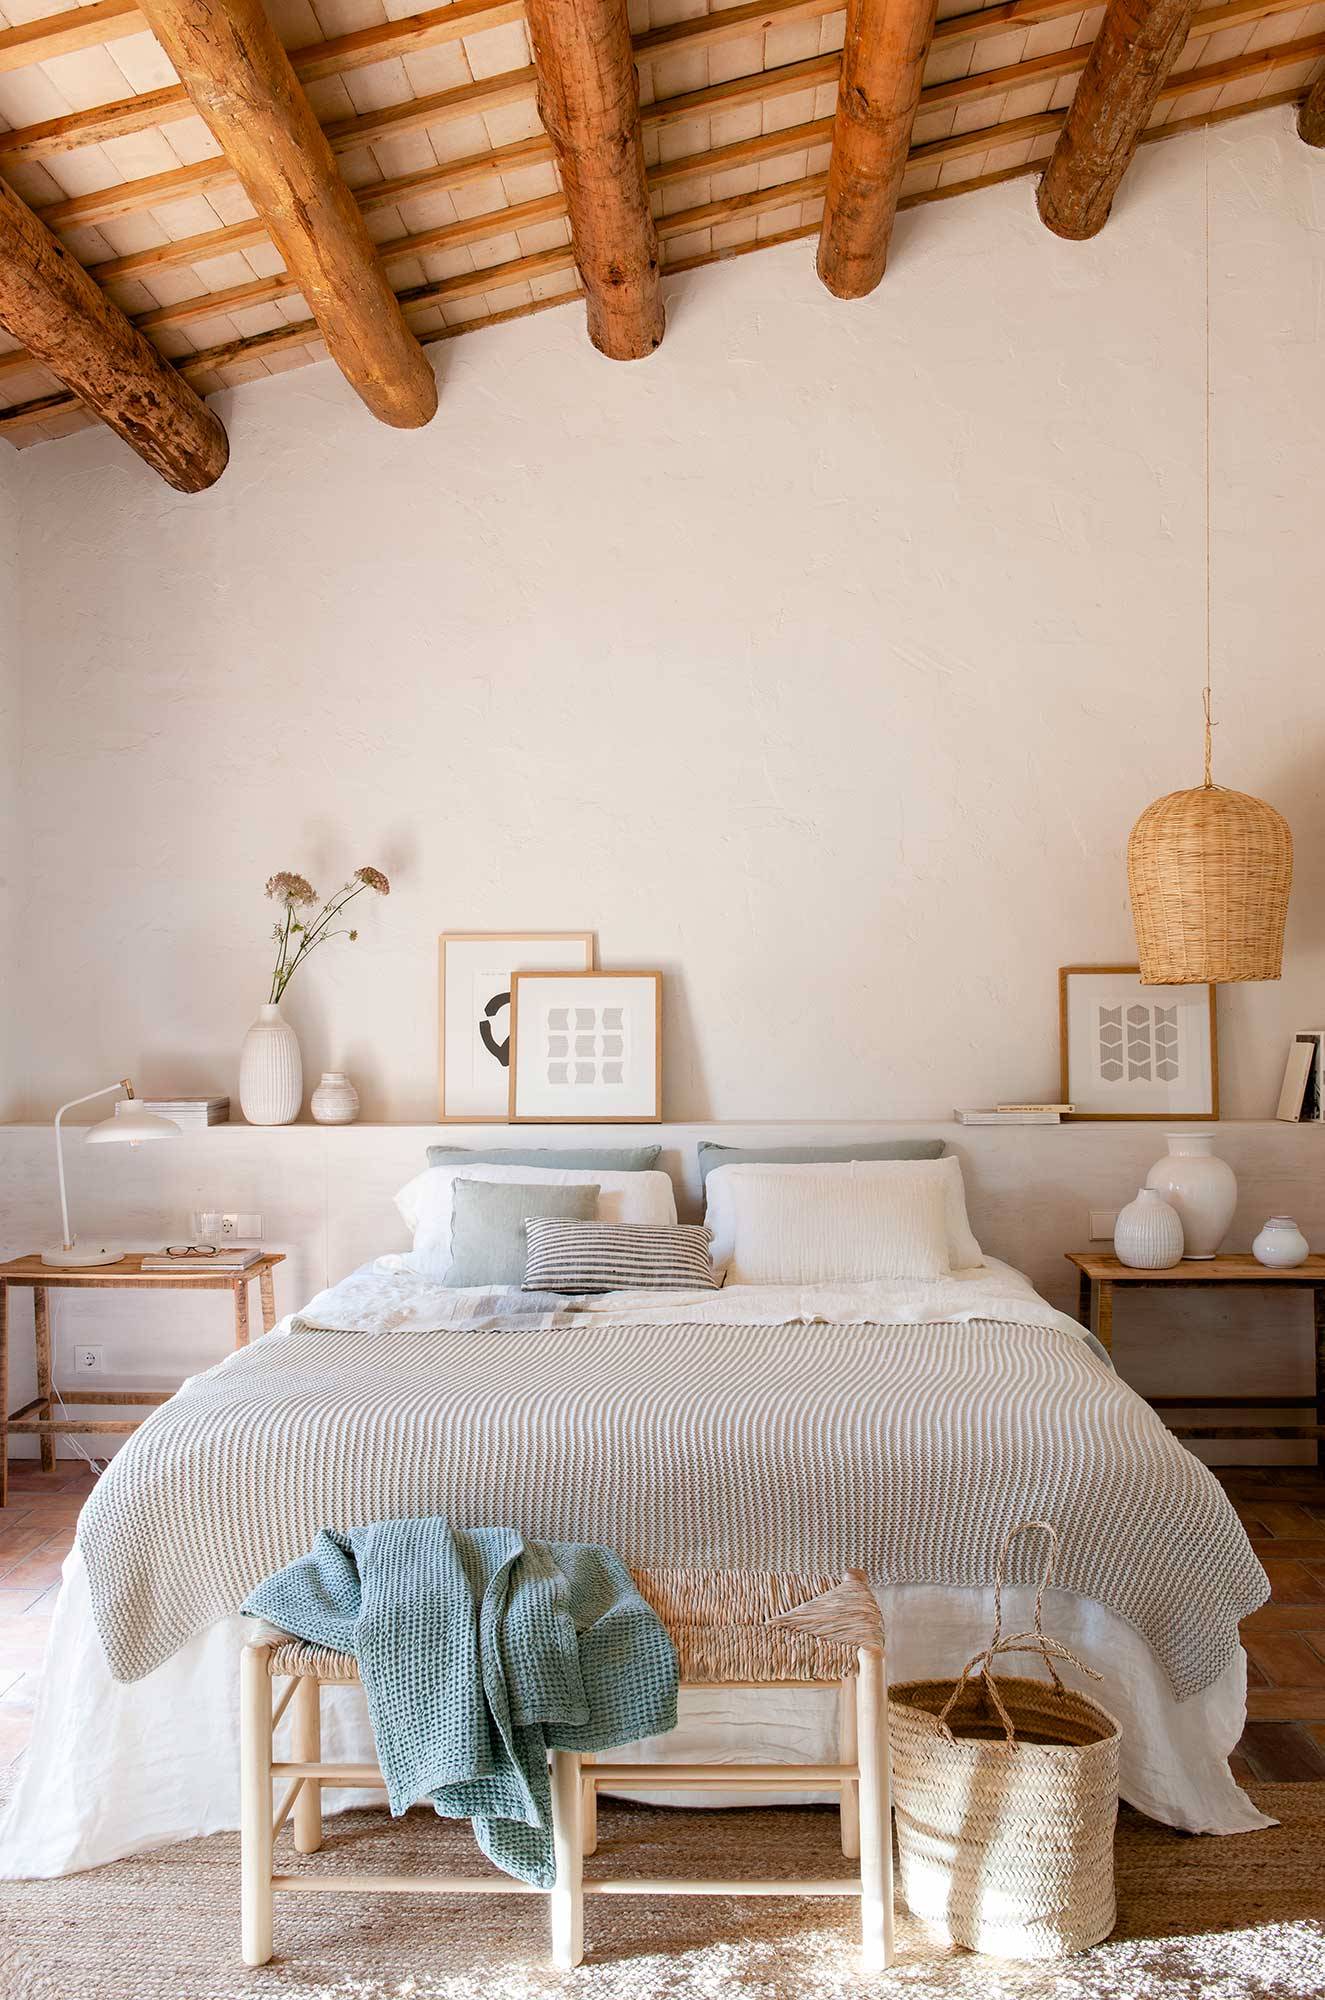 Dormitorio de primavera abuhardillado con vigas de madera y ropa de cama en blanco, gris y azul.